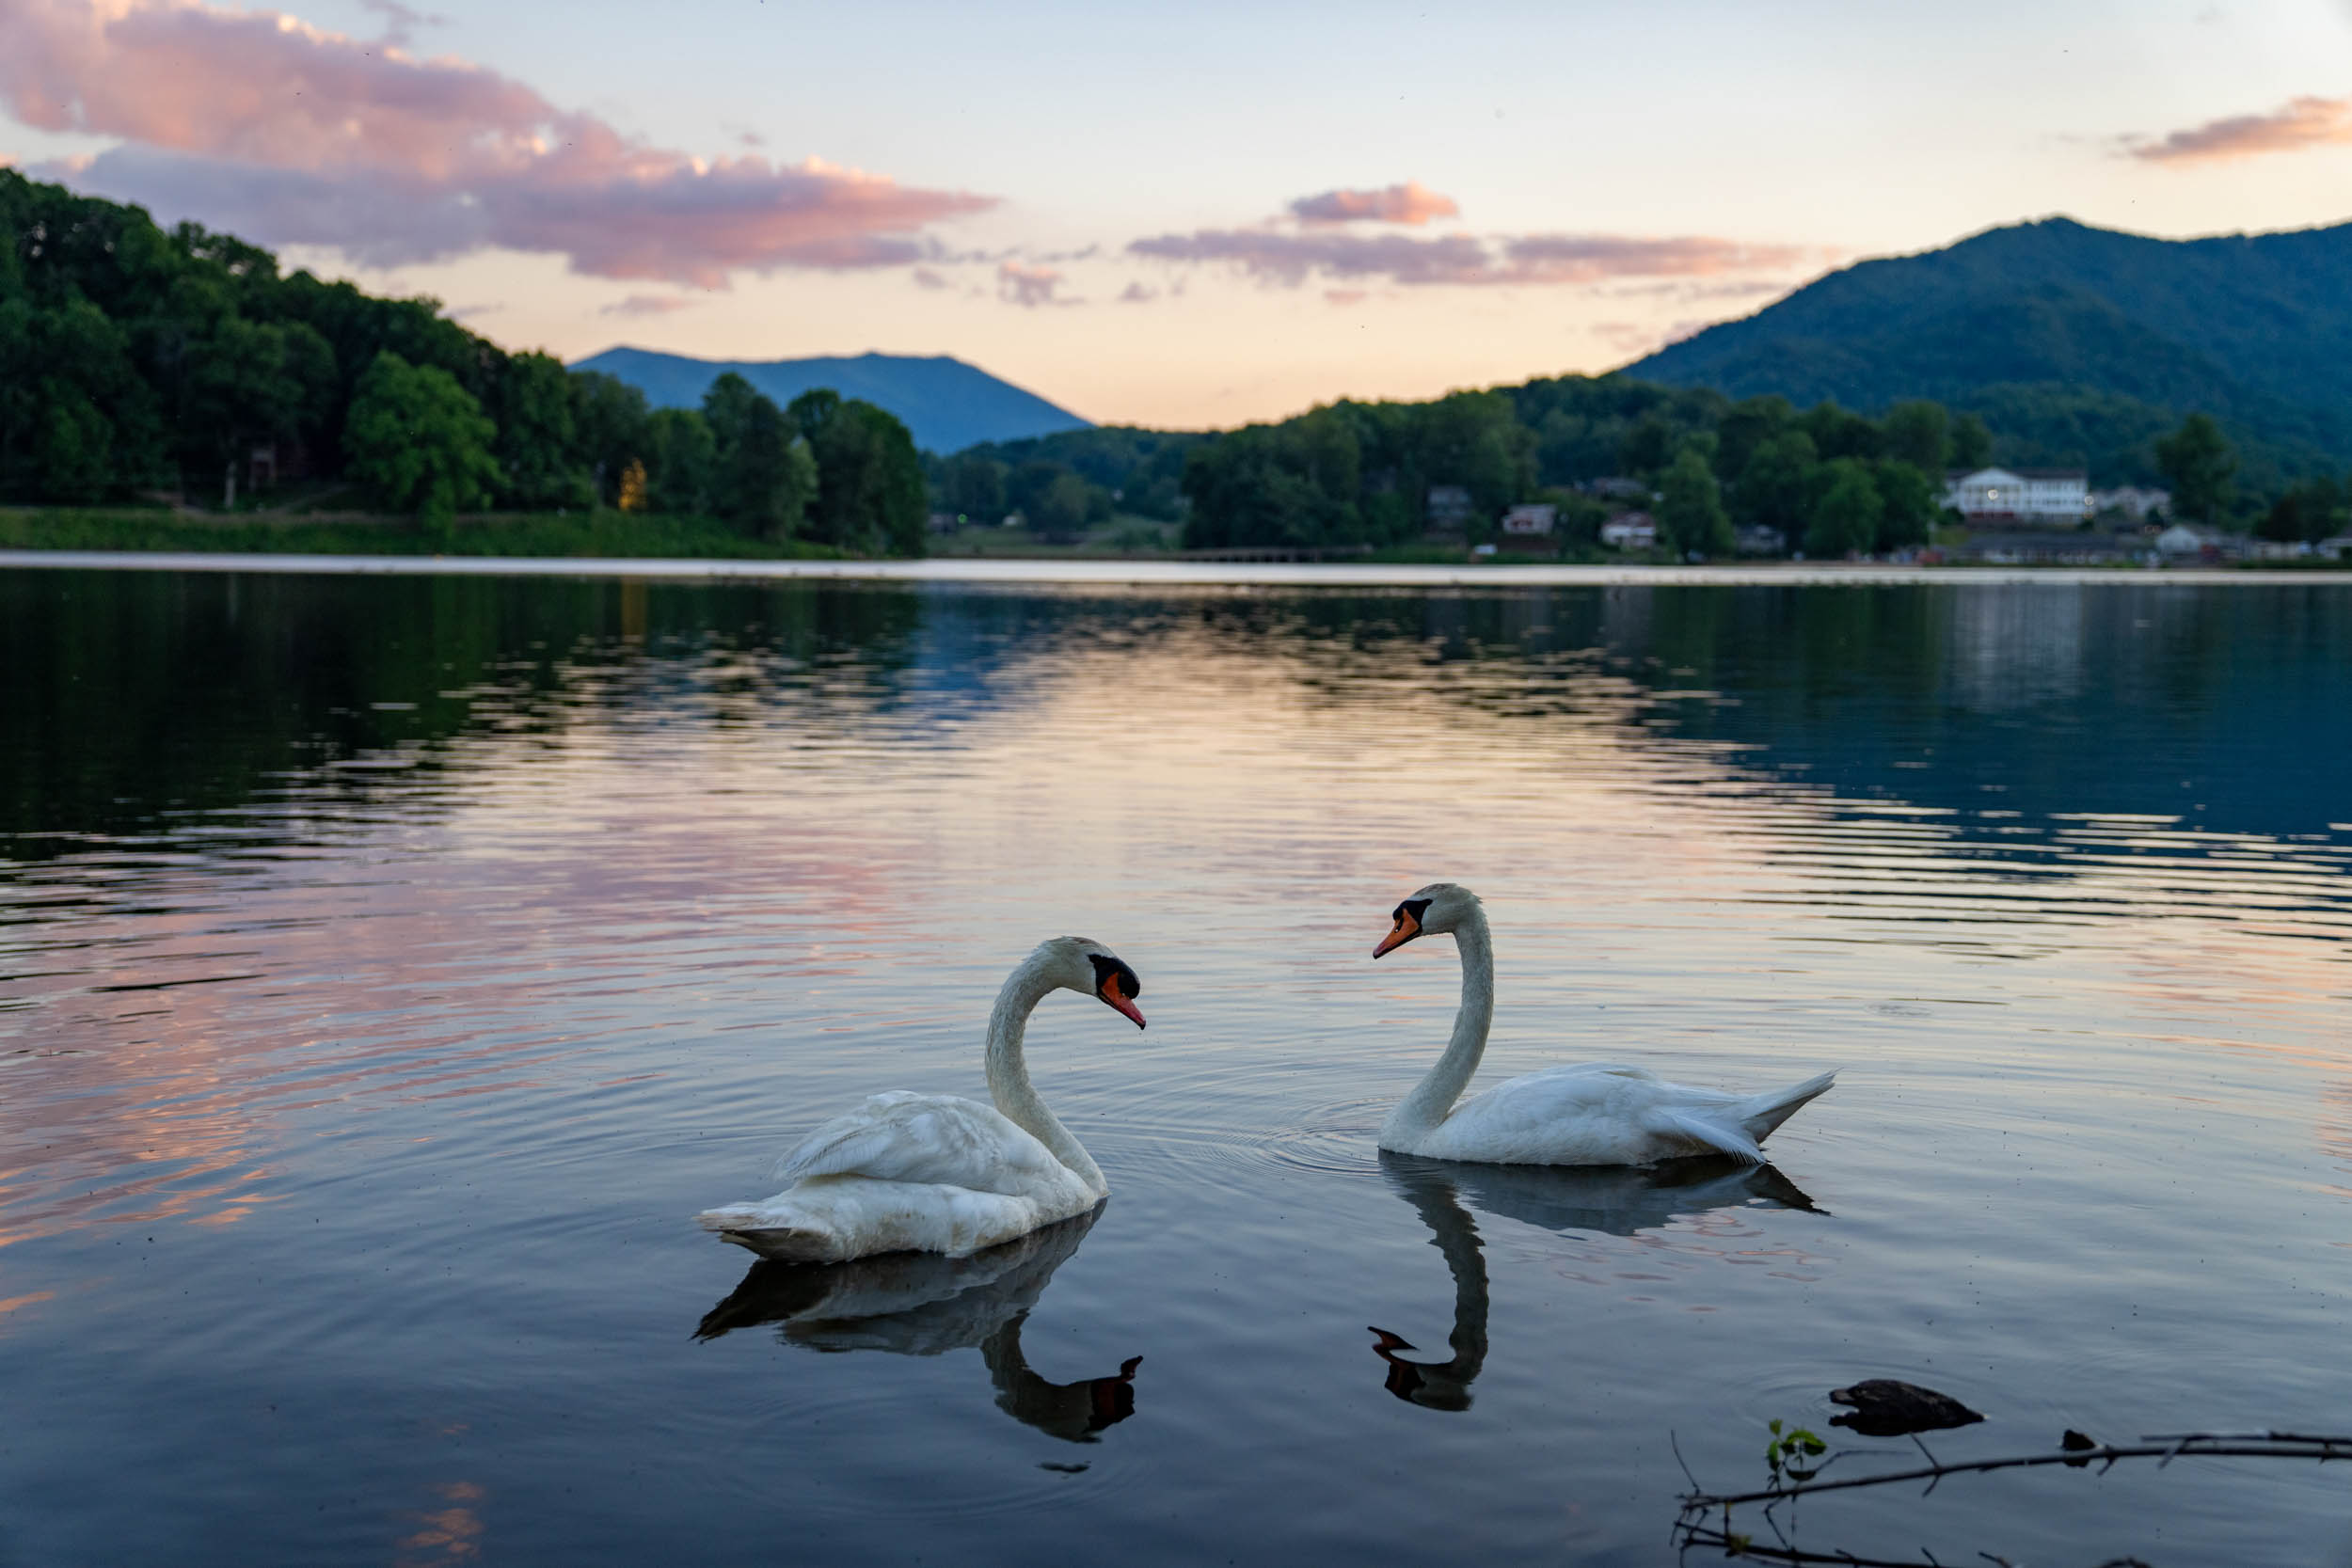 Two swans on Lake Junaluska at sunset